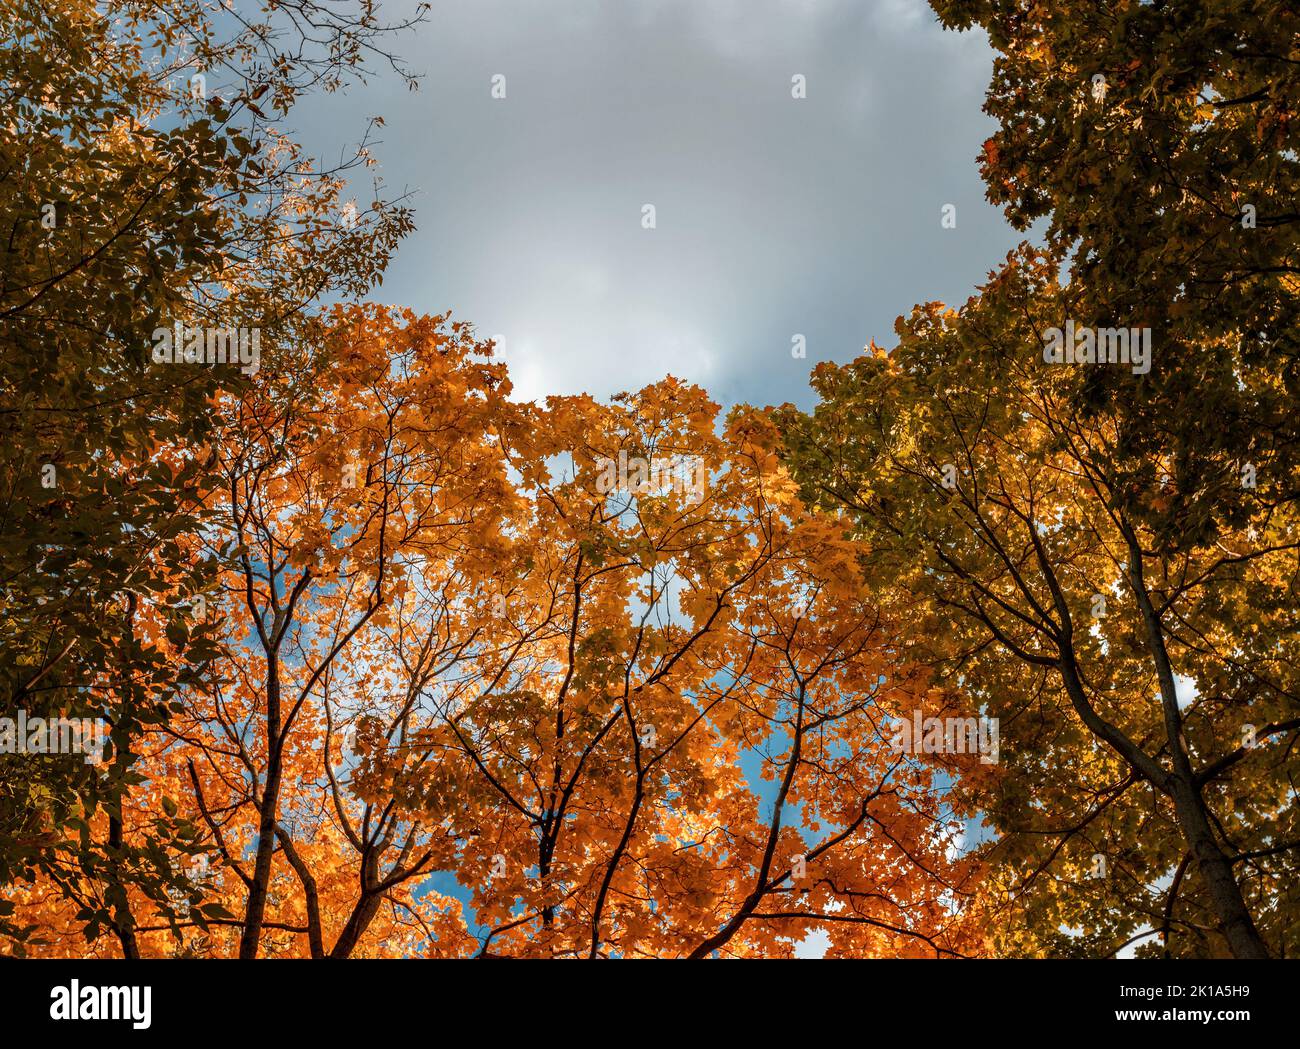 Arrière-plan des arbres avec feuillage d'automne orange. Branches d'arbres d'automne contre le ciel. Banque D'Images